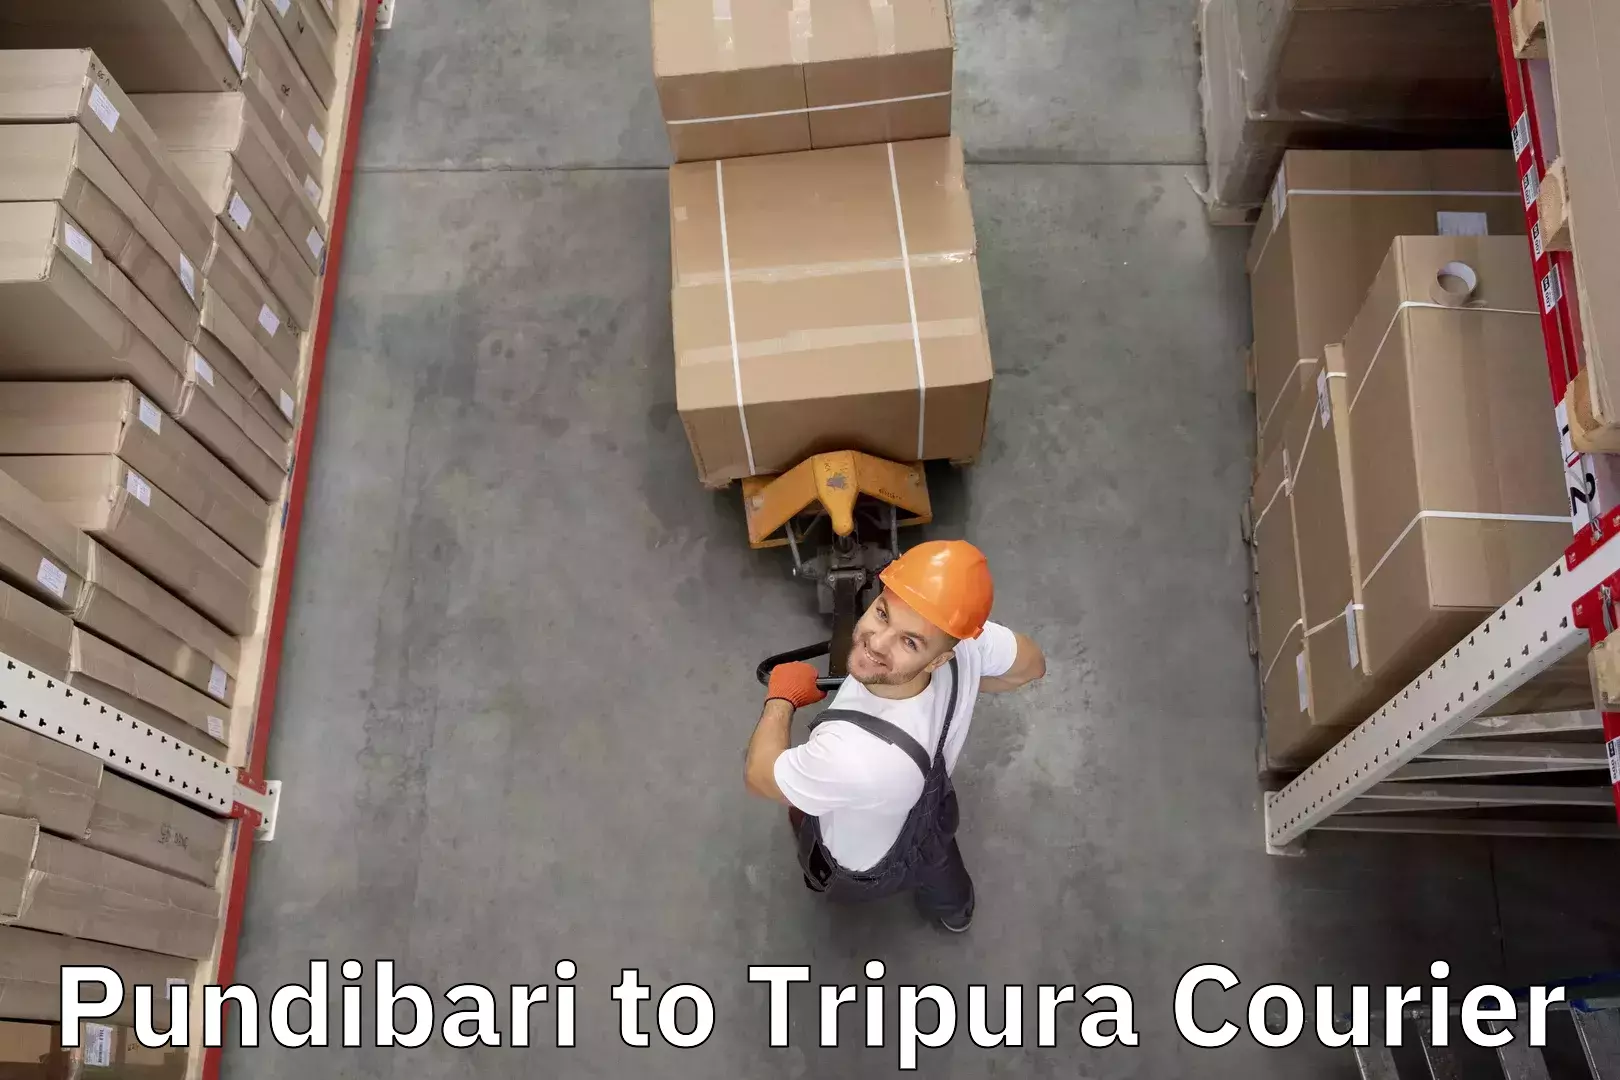 Excess baggage transport Pundibari to Udaipur Tripura